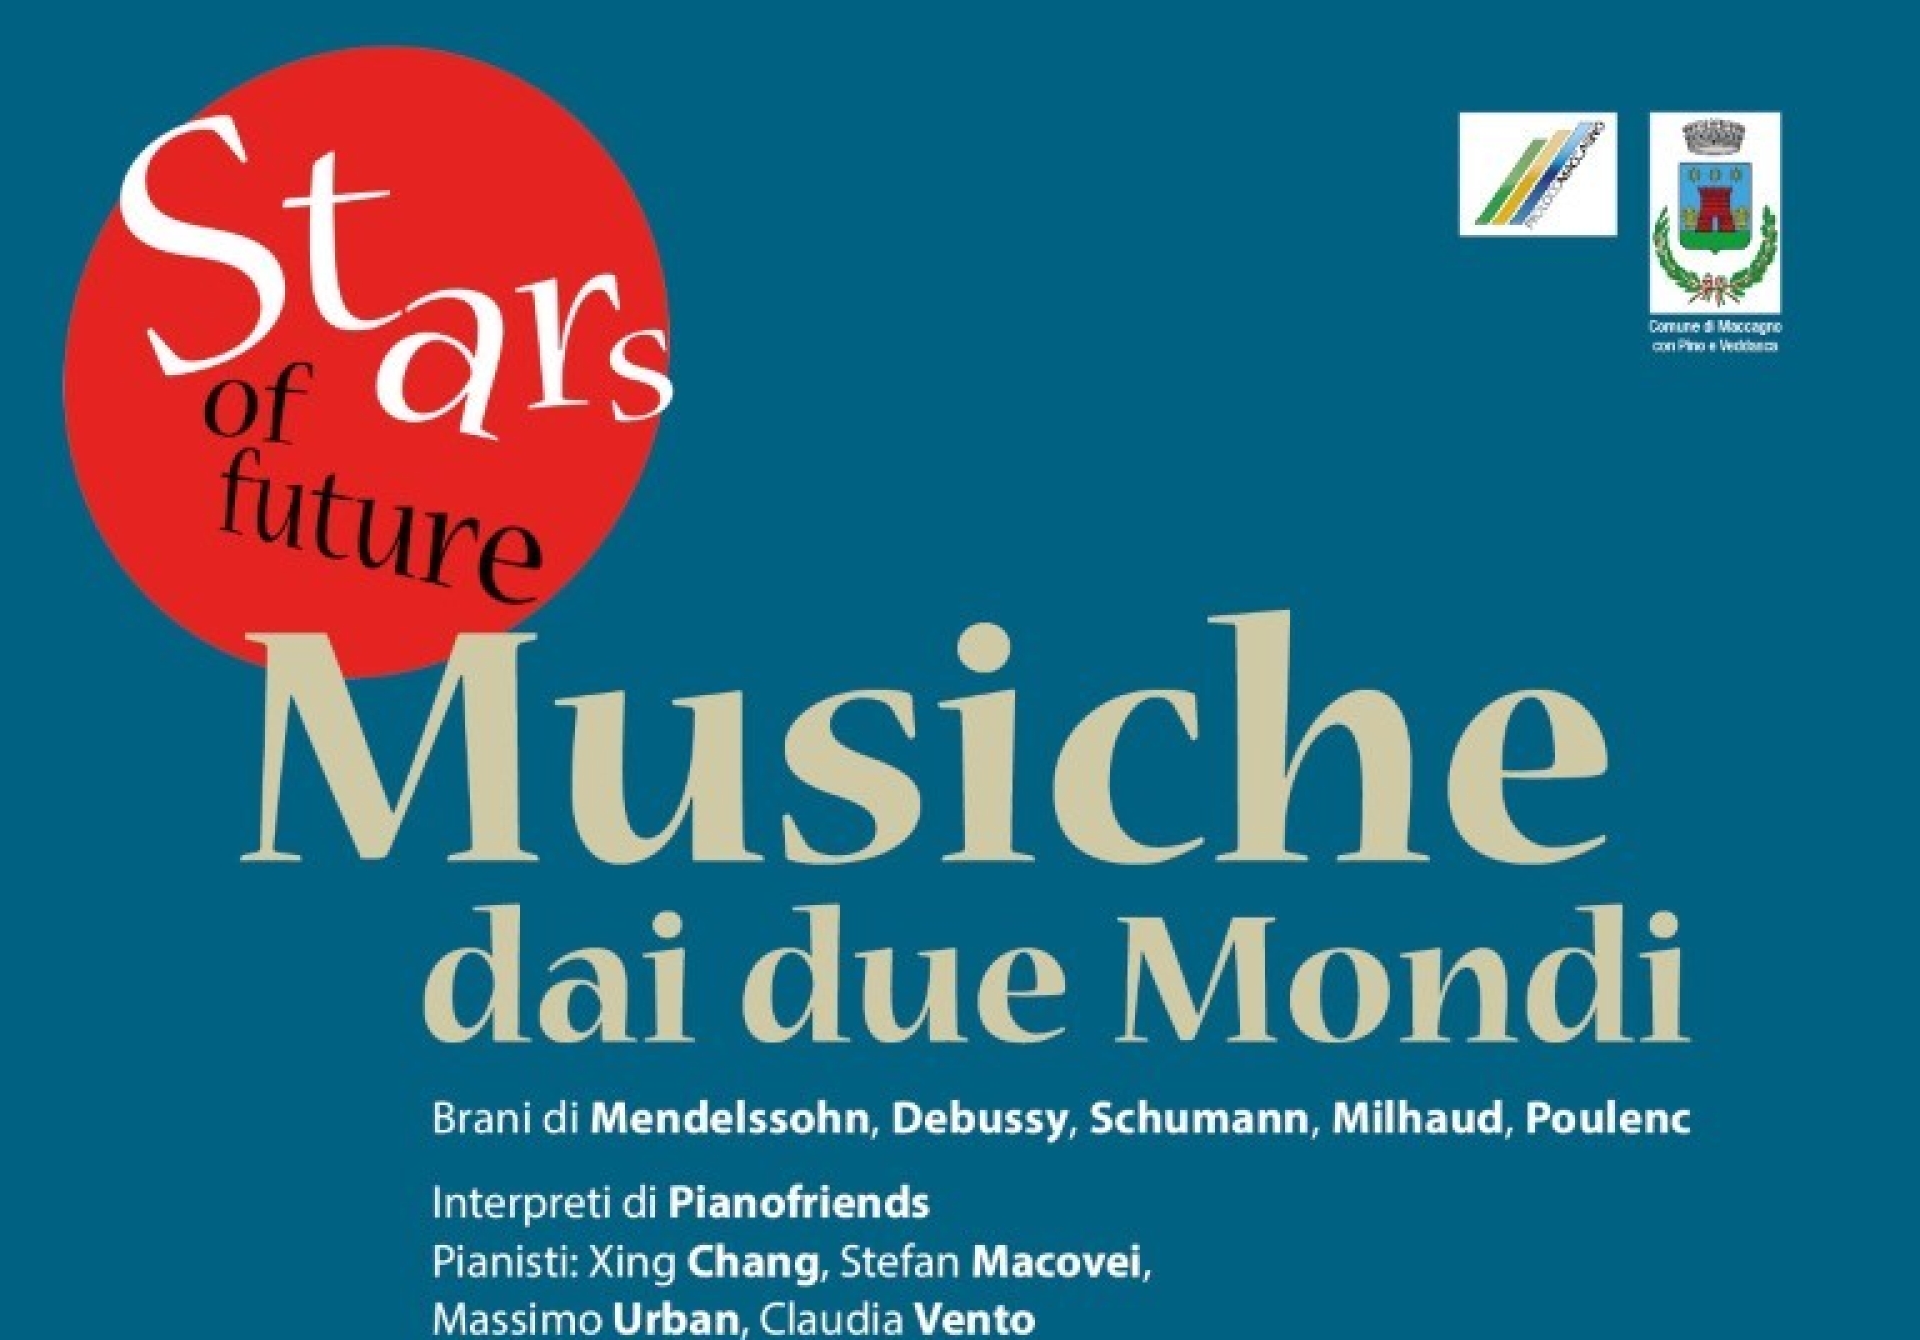 “Stars of Future” -  Musiche dai due mondi